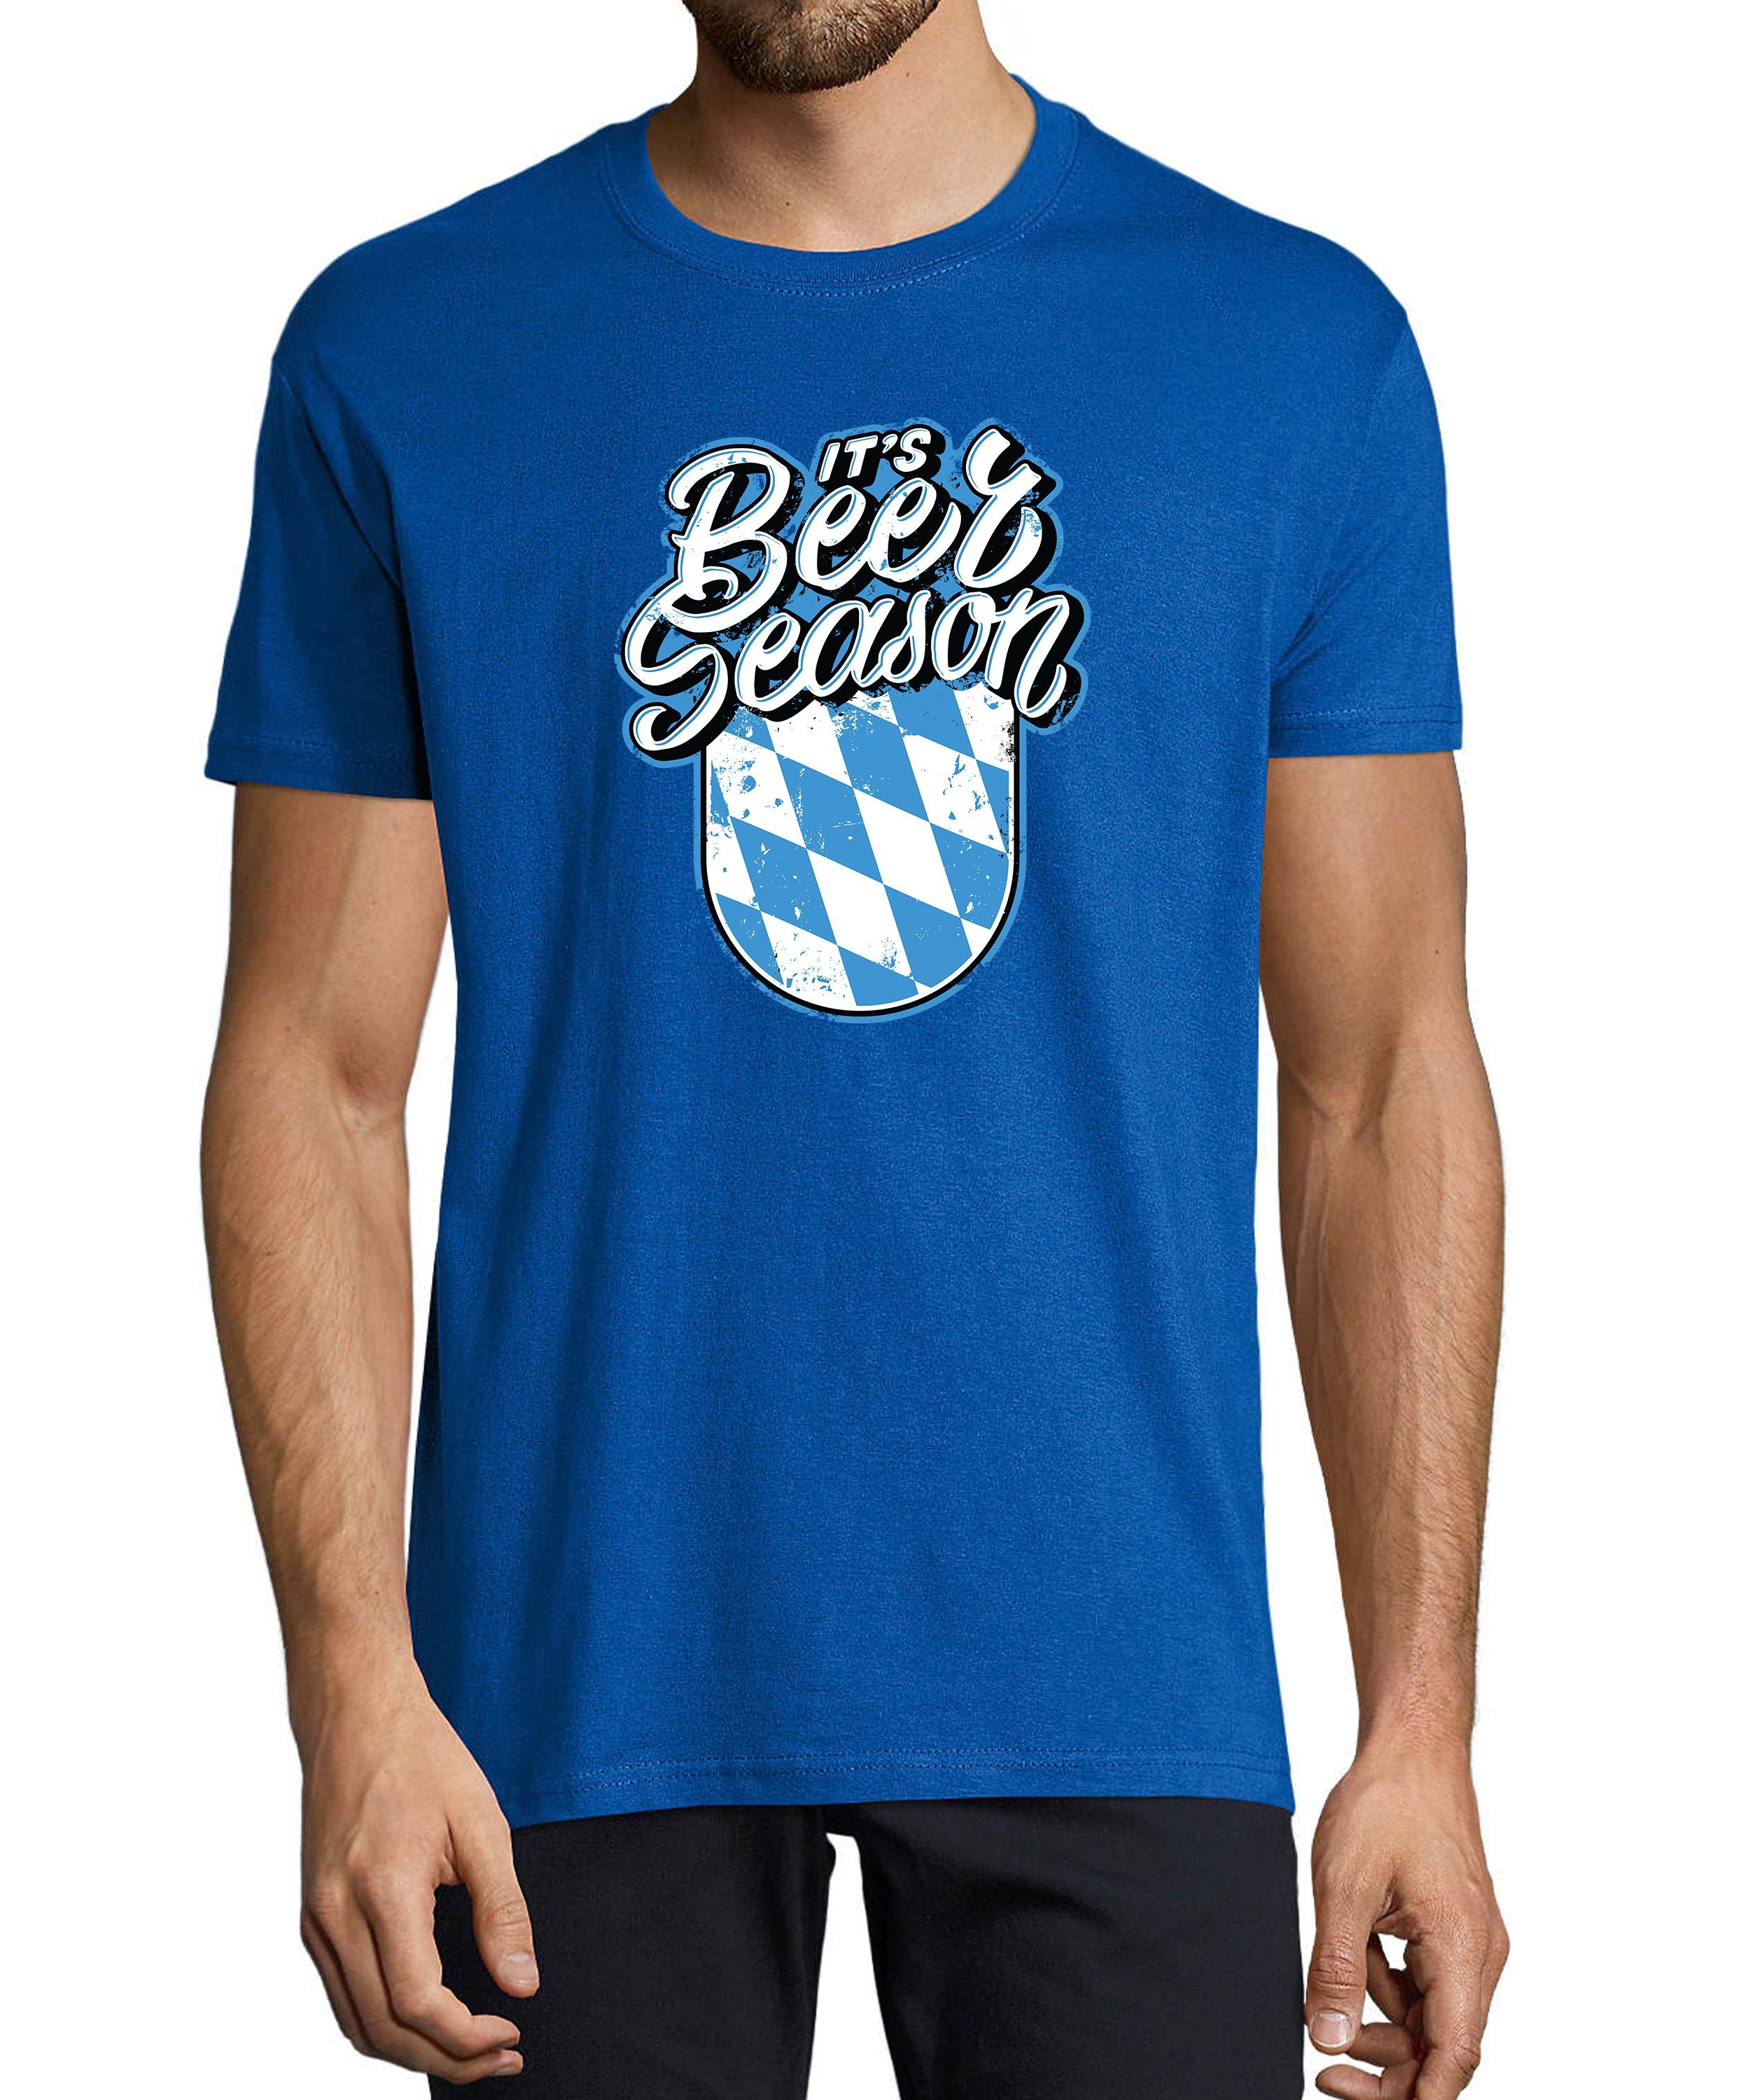 MyDesign24 T-Shirt Herren Fun Print Shirt - Oktoberfest Trinkshirt its Beer Season Baumwollshirt mit Aufdruck Regular Fit, i303